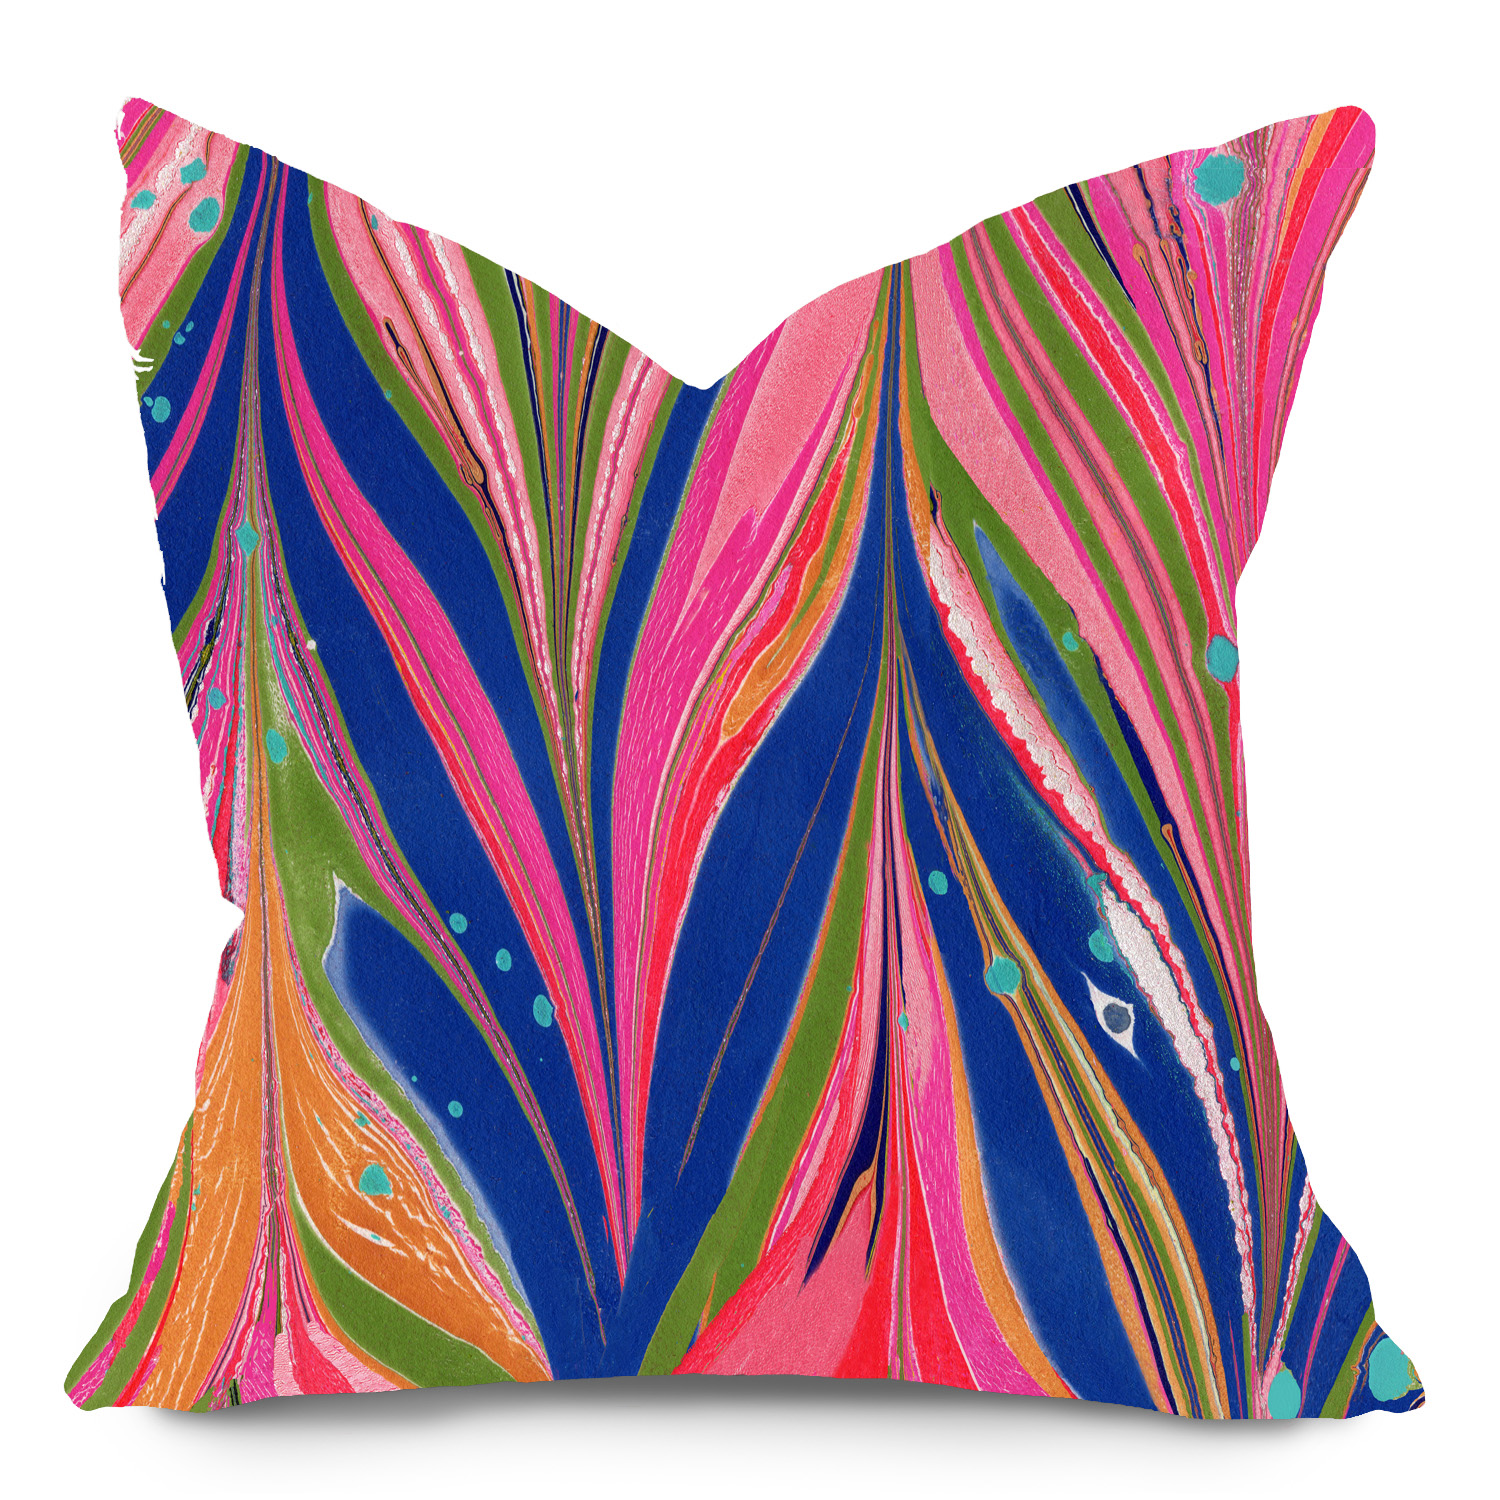 Jill Seale Design Studio, Ziggy Pink Pillow